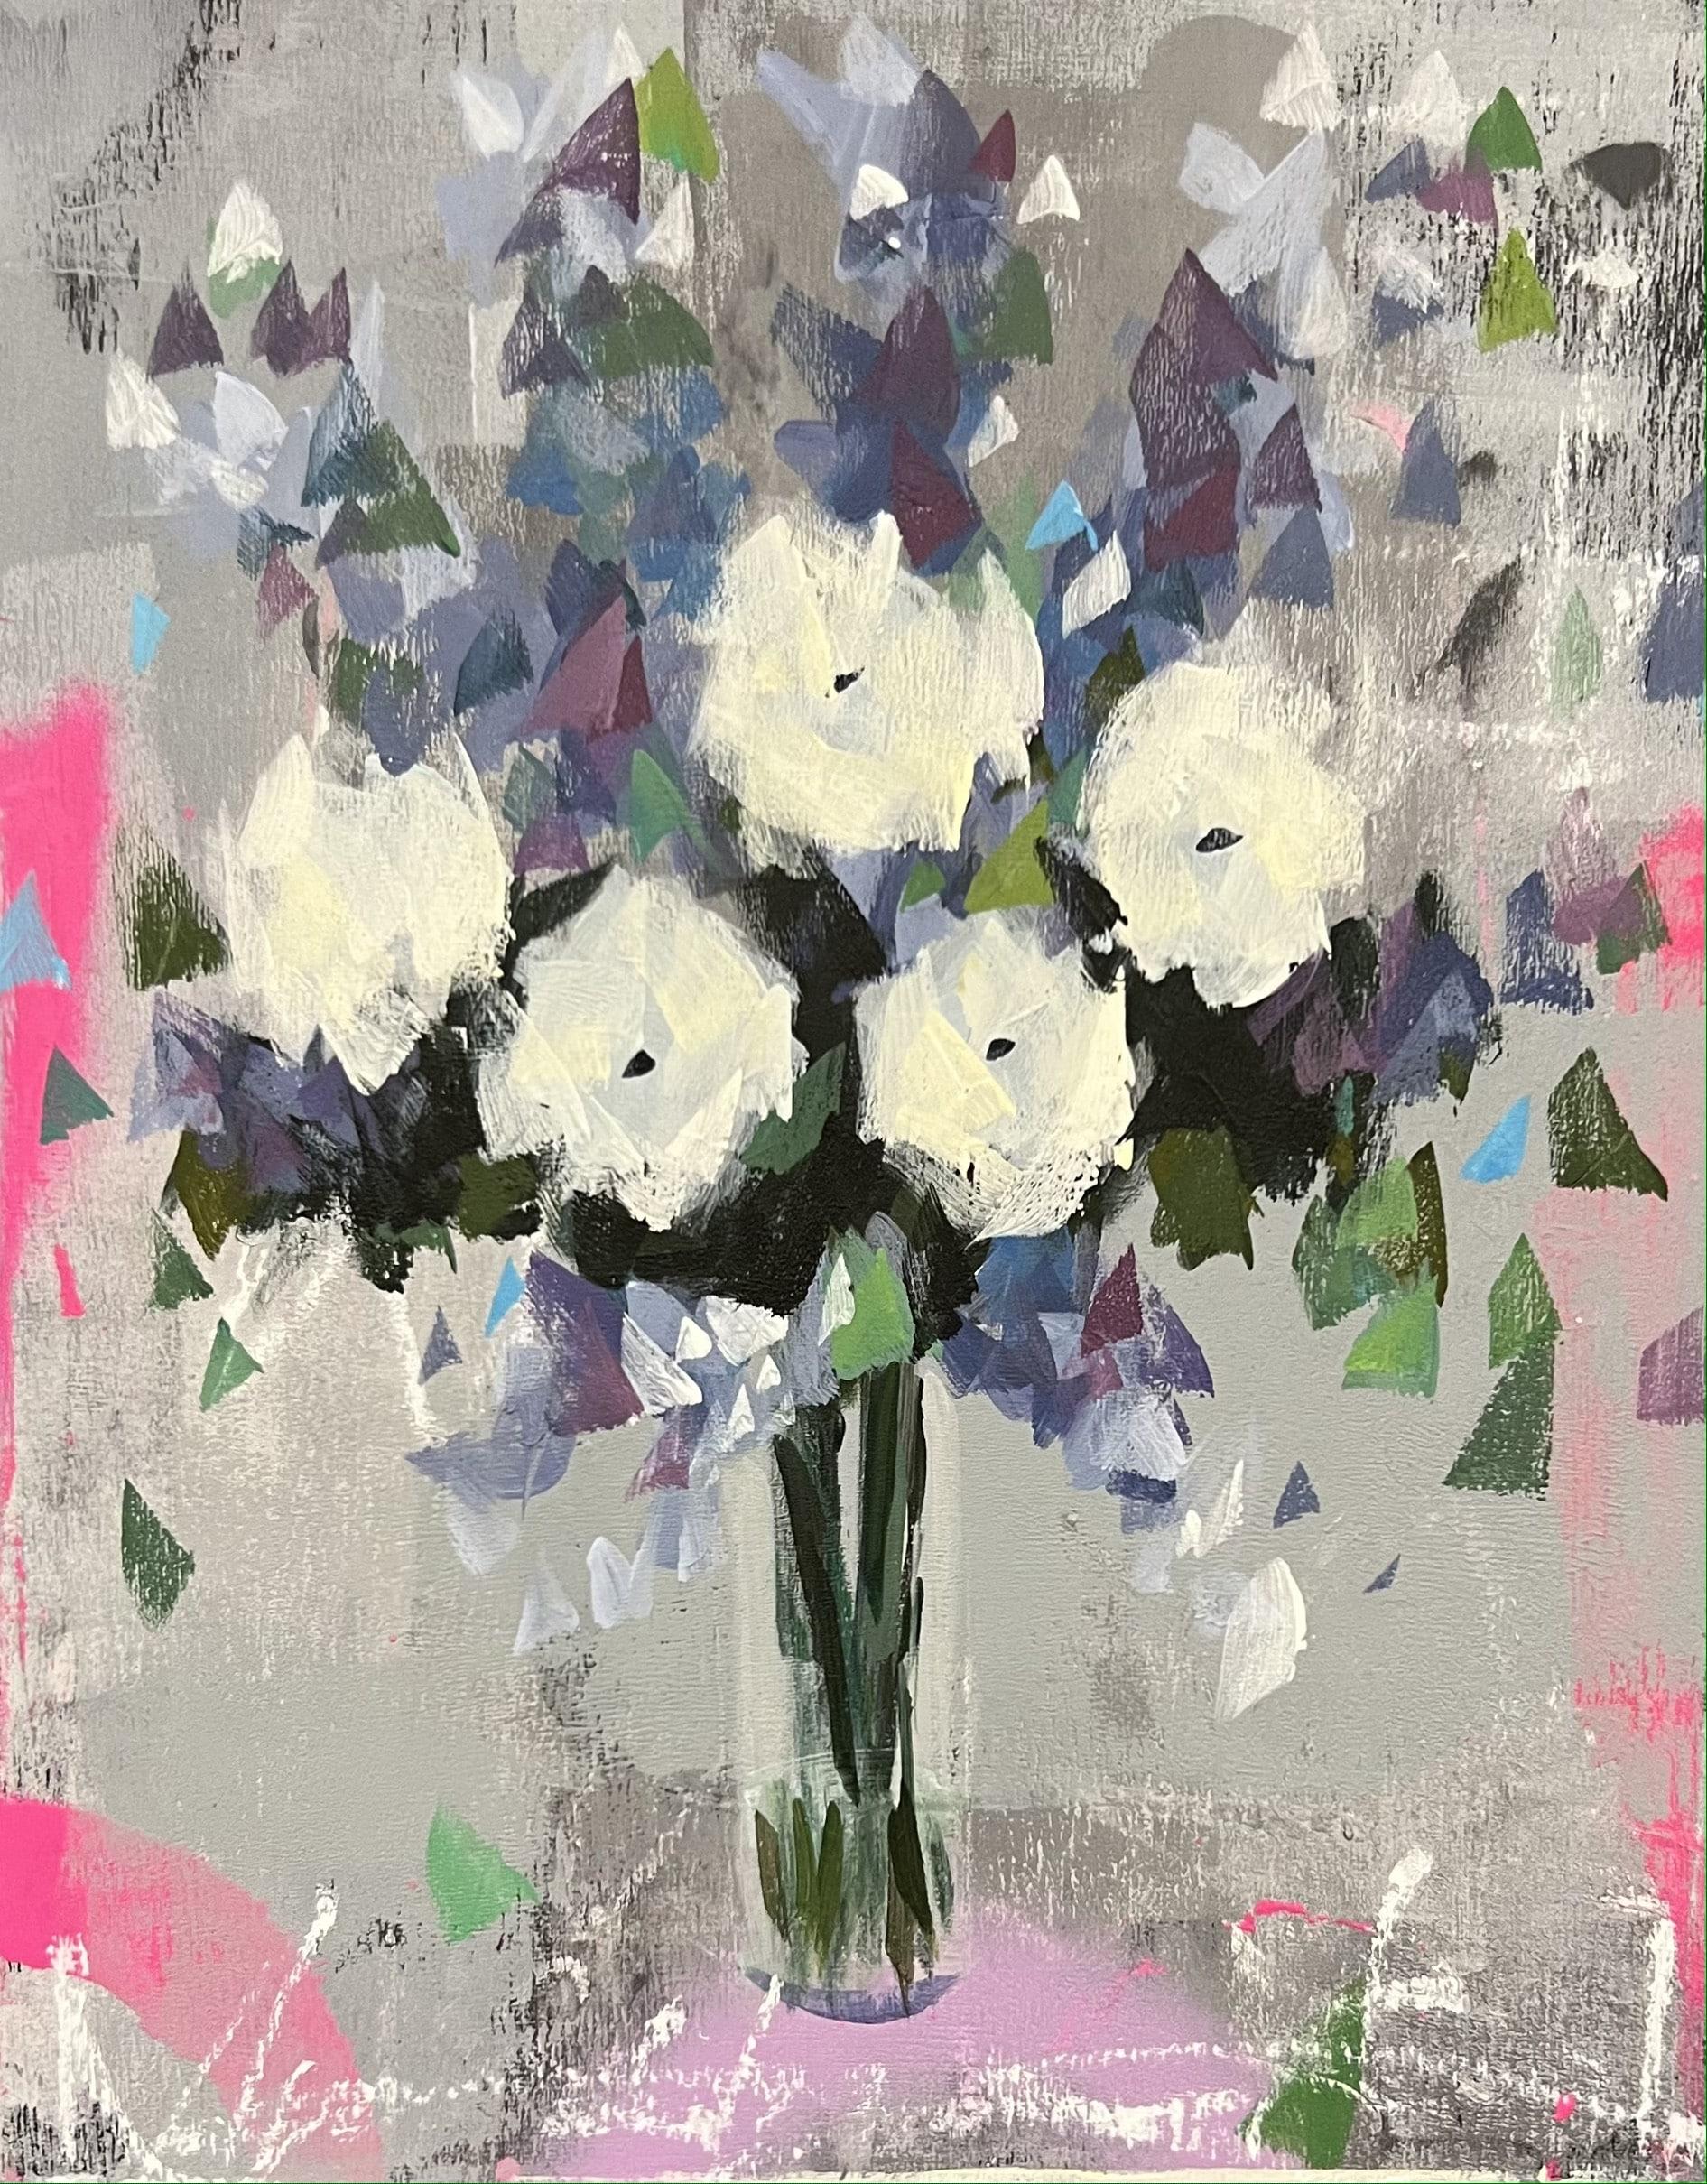 Still-Life Painting Steve Javiel - Concept 01 - Peinture impressionniste - Fleur blanche